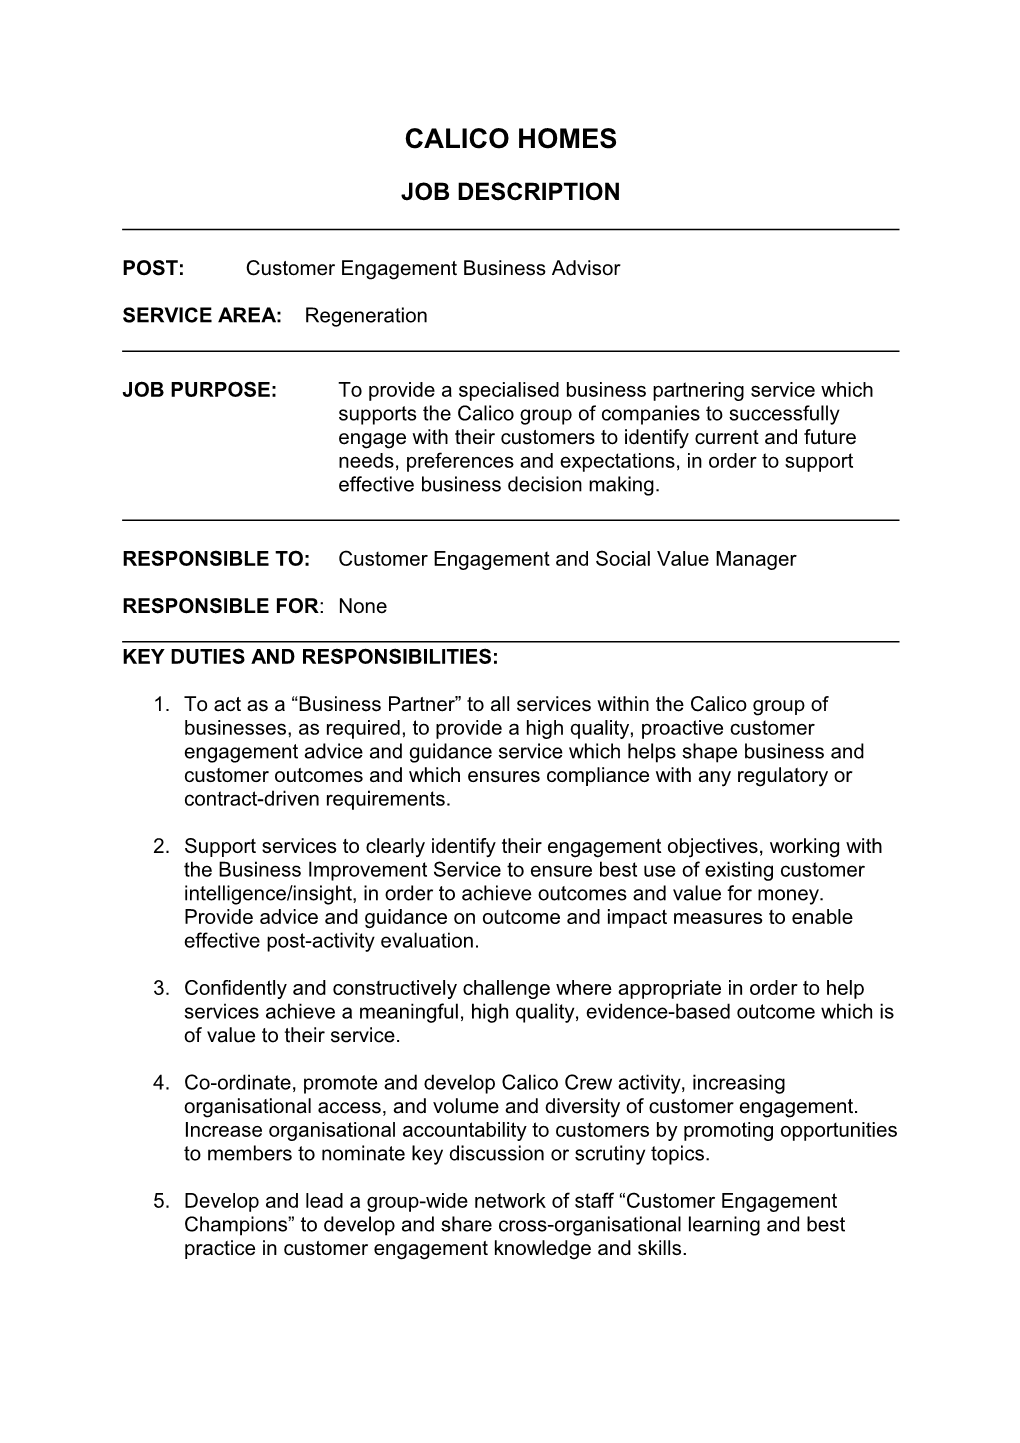 POST: Customer Engagement Business Advisor